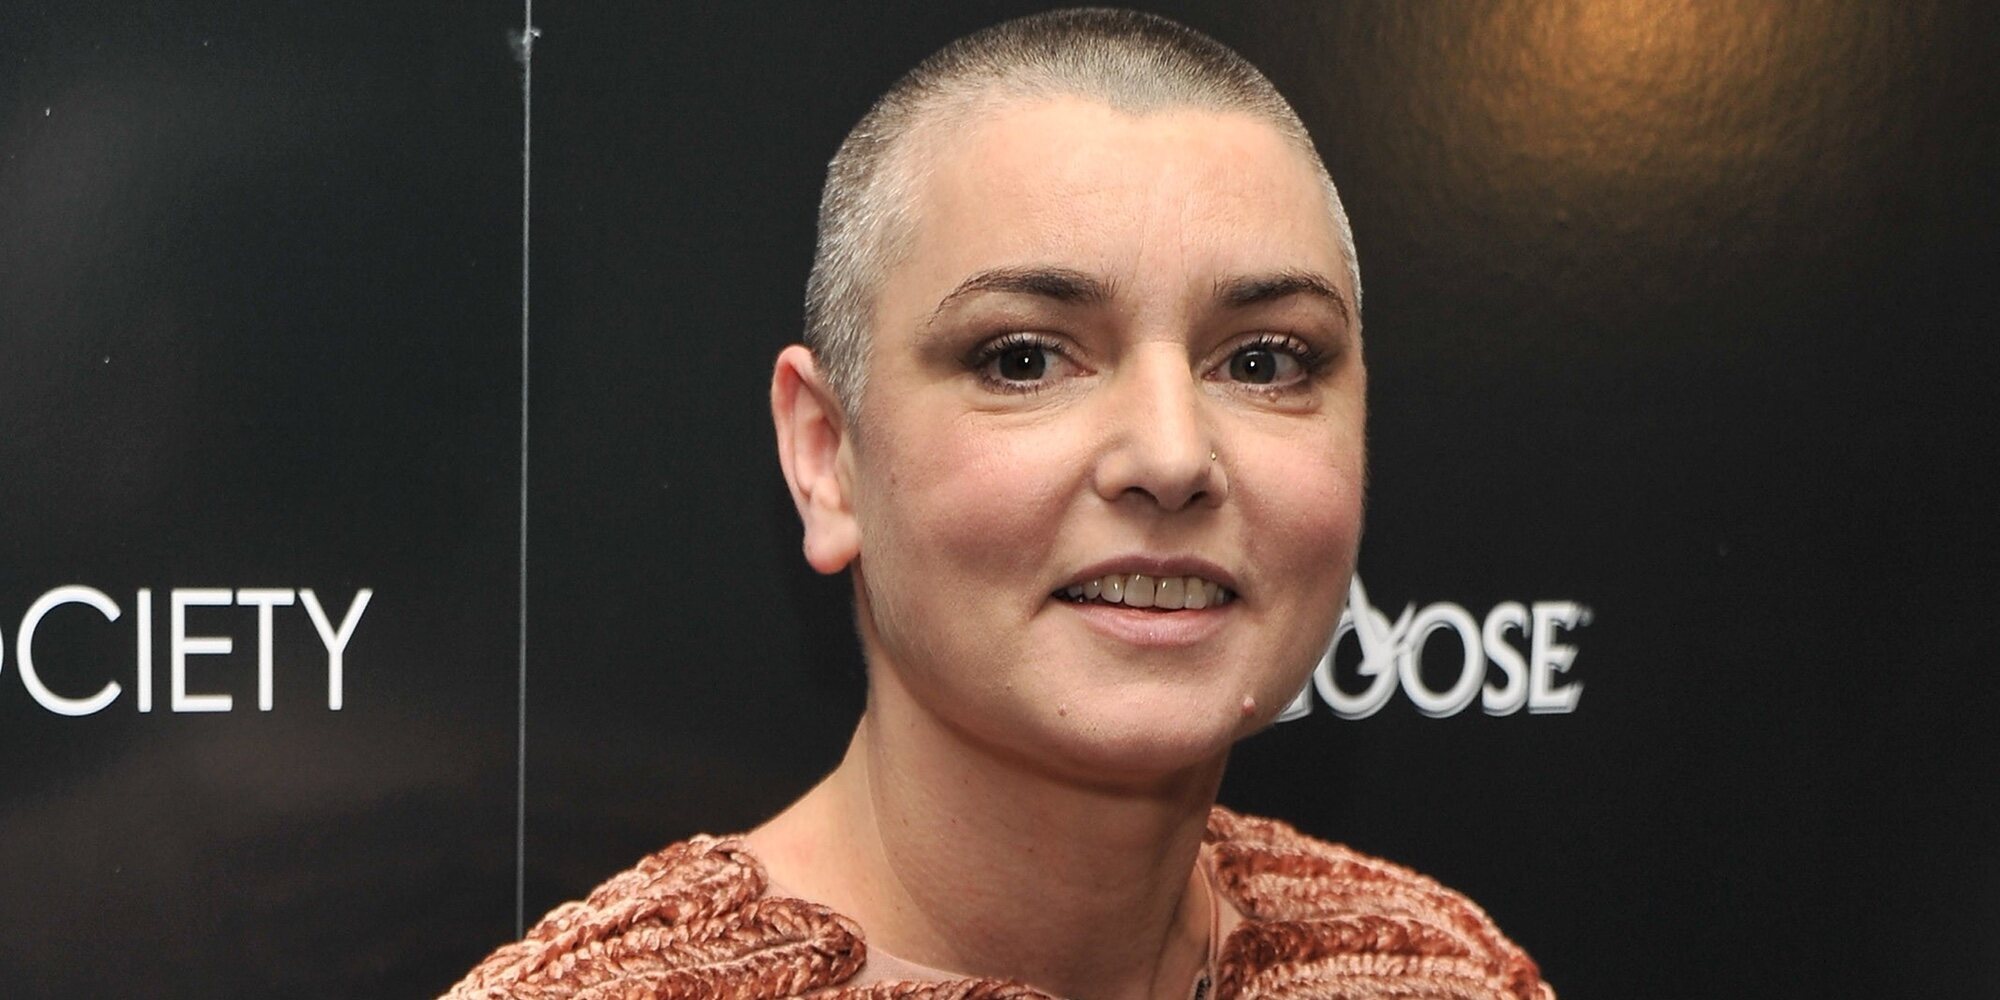 Sinéad O'Connor, ingresada en el hospital tras unos mensajes preocupantes sobre querer marcharse con su hijo